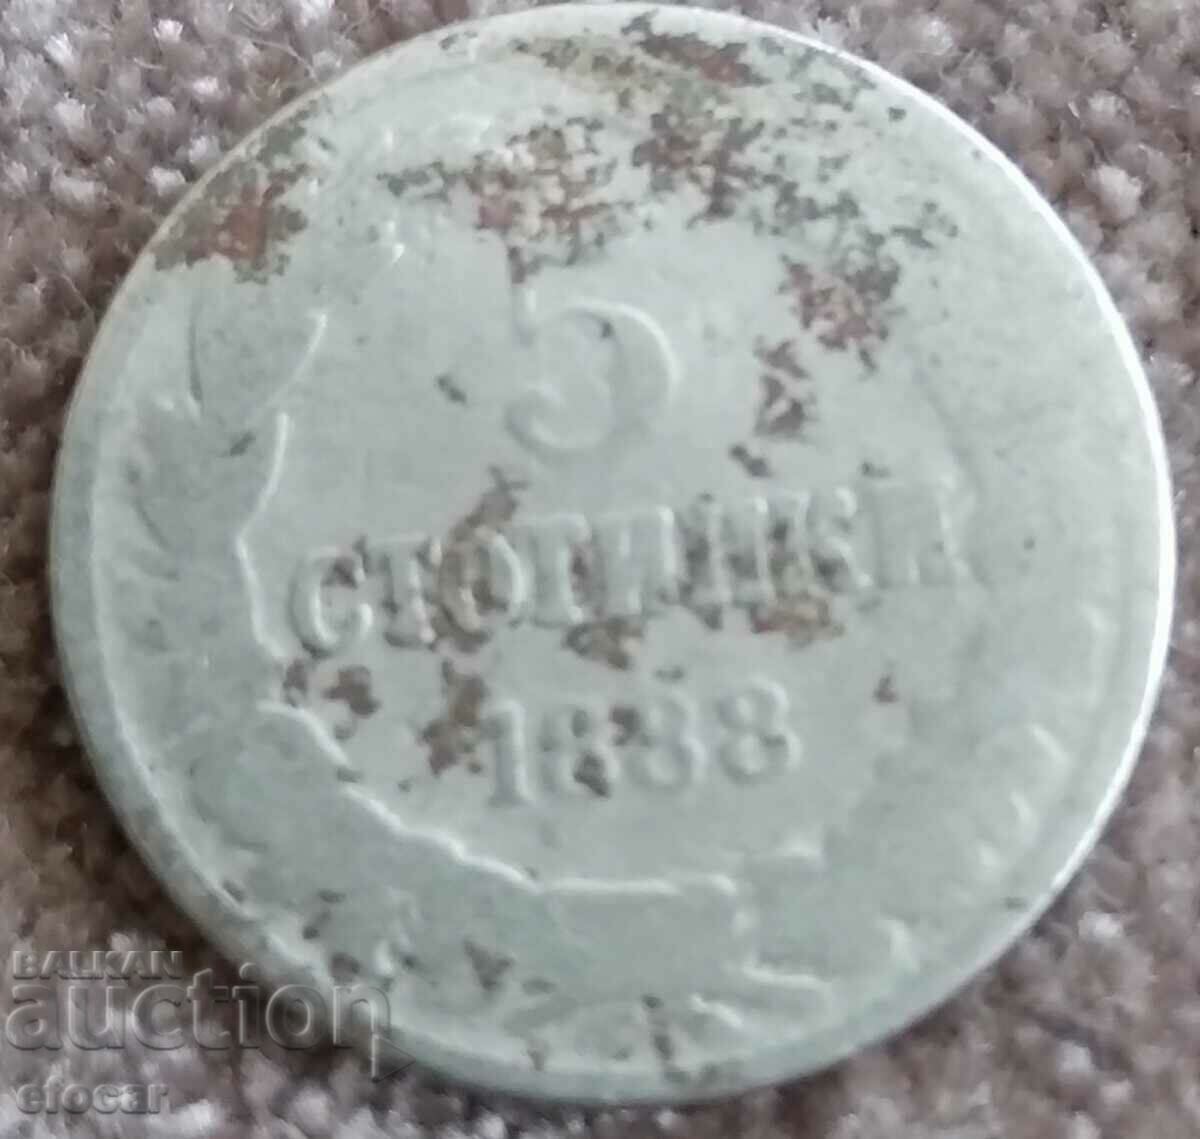 5 стотинки 1888 Kняжество България БЗЦ